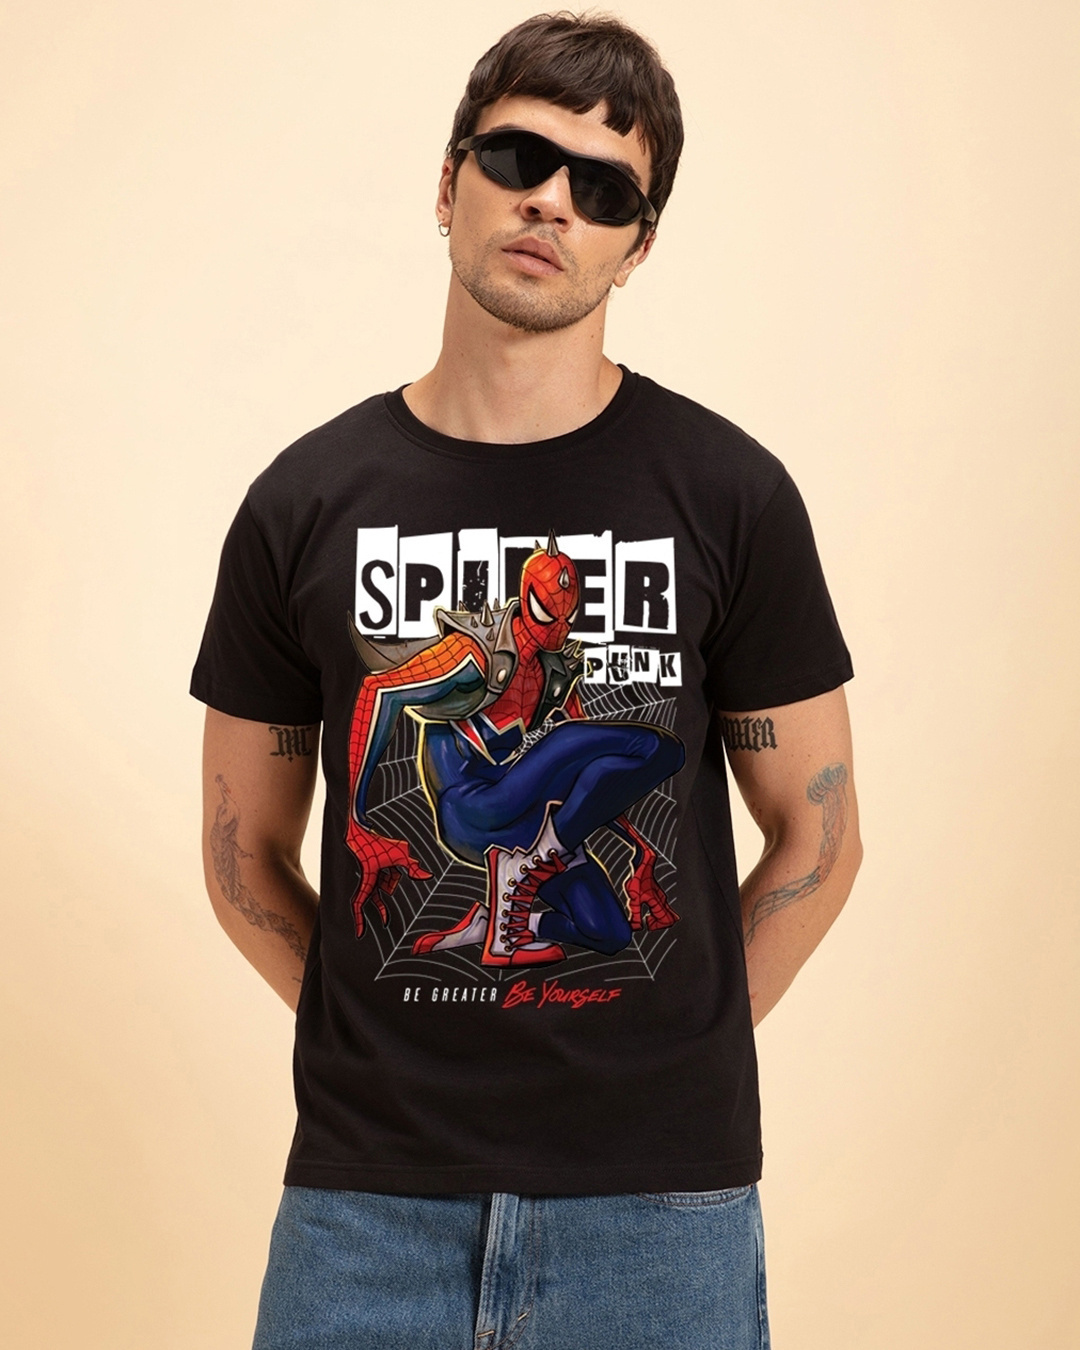 Spiderpunk 2015 T-shirts 2X-Large Black RIPT Apparel